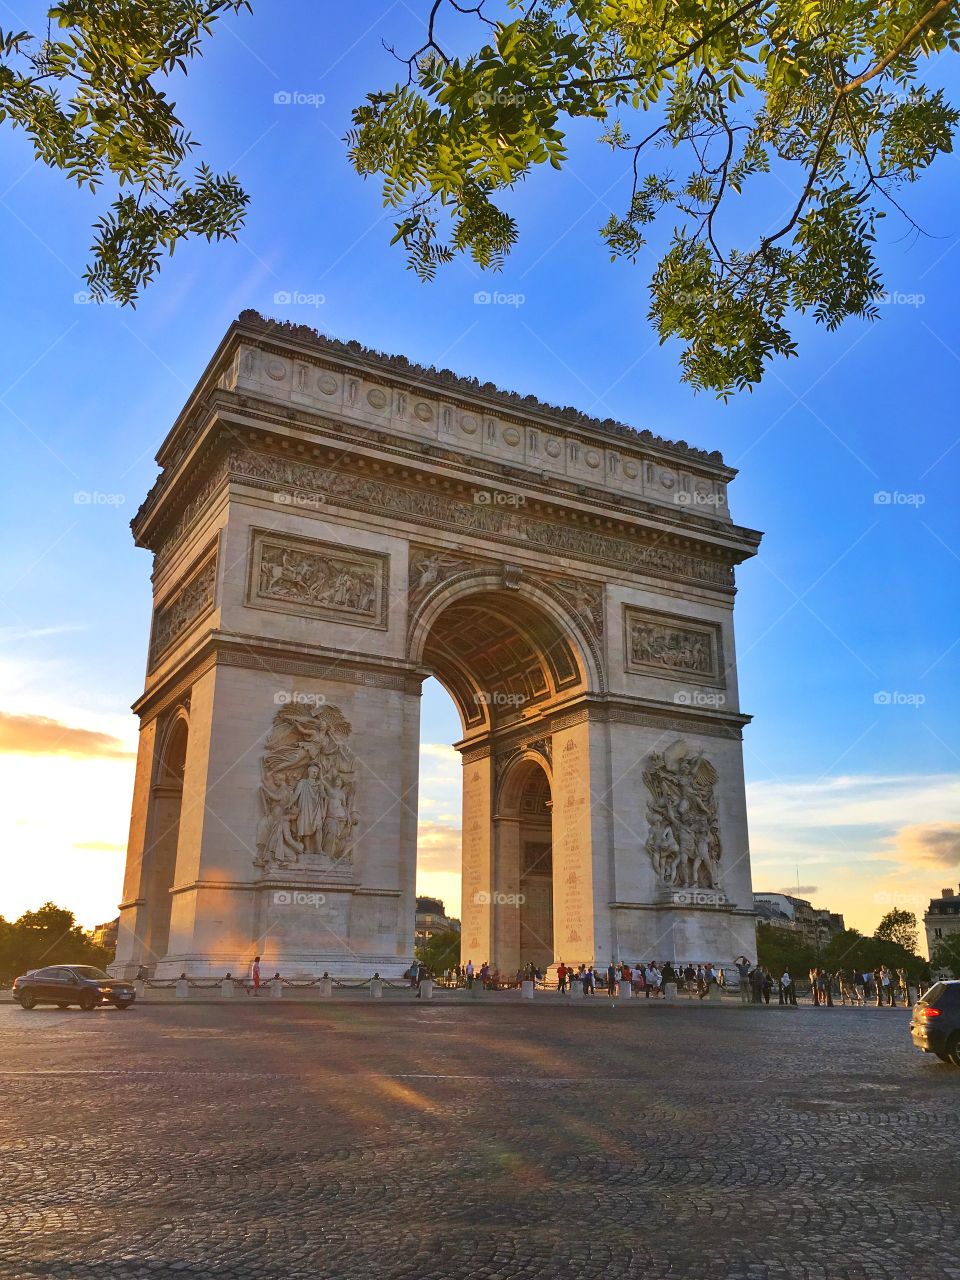 Afternoon in Arc de Triomphe, Paris